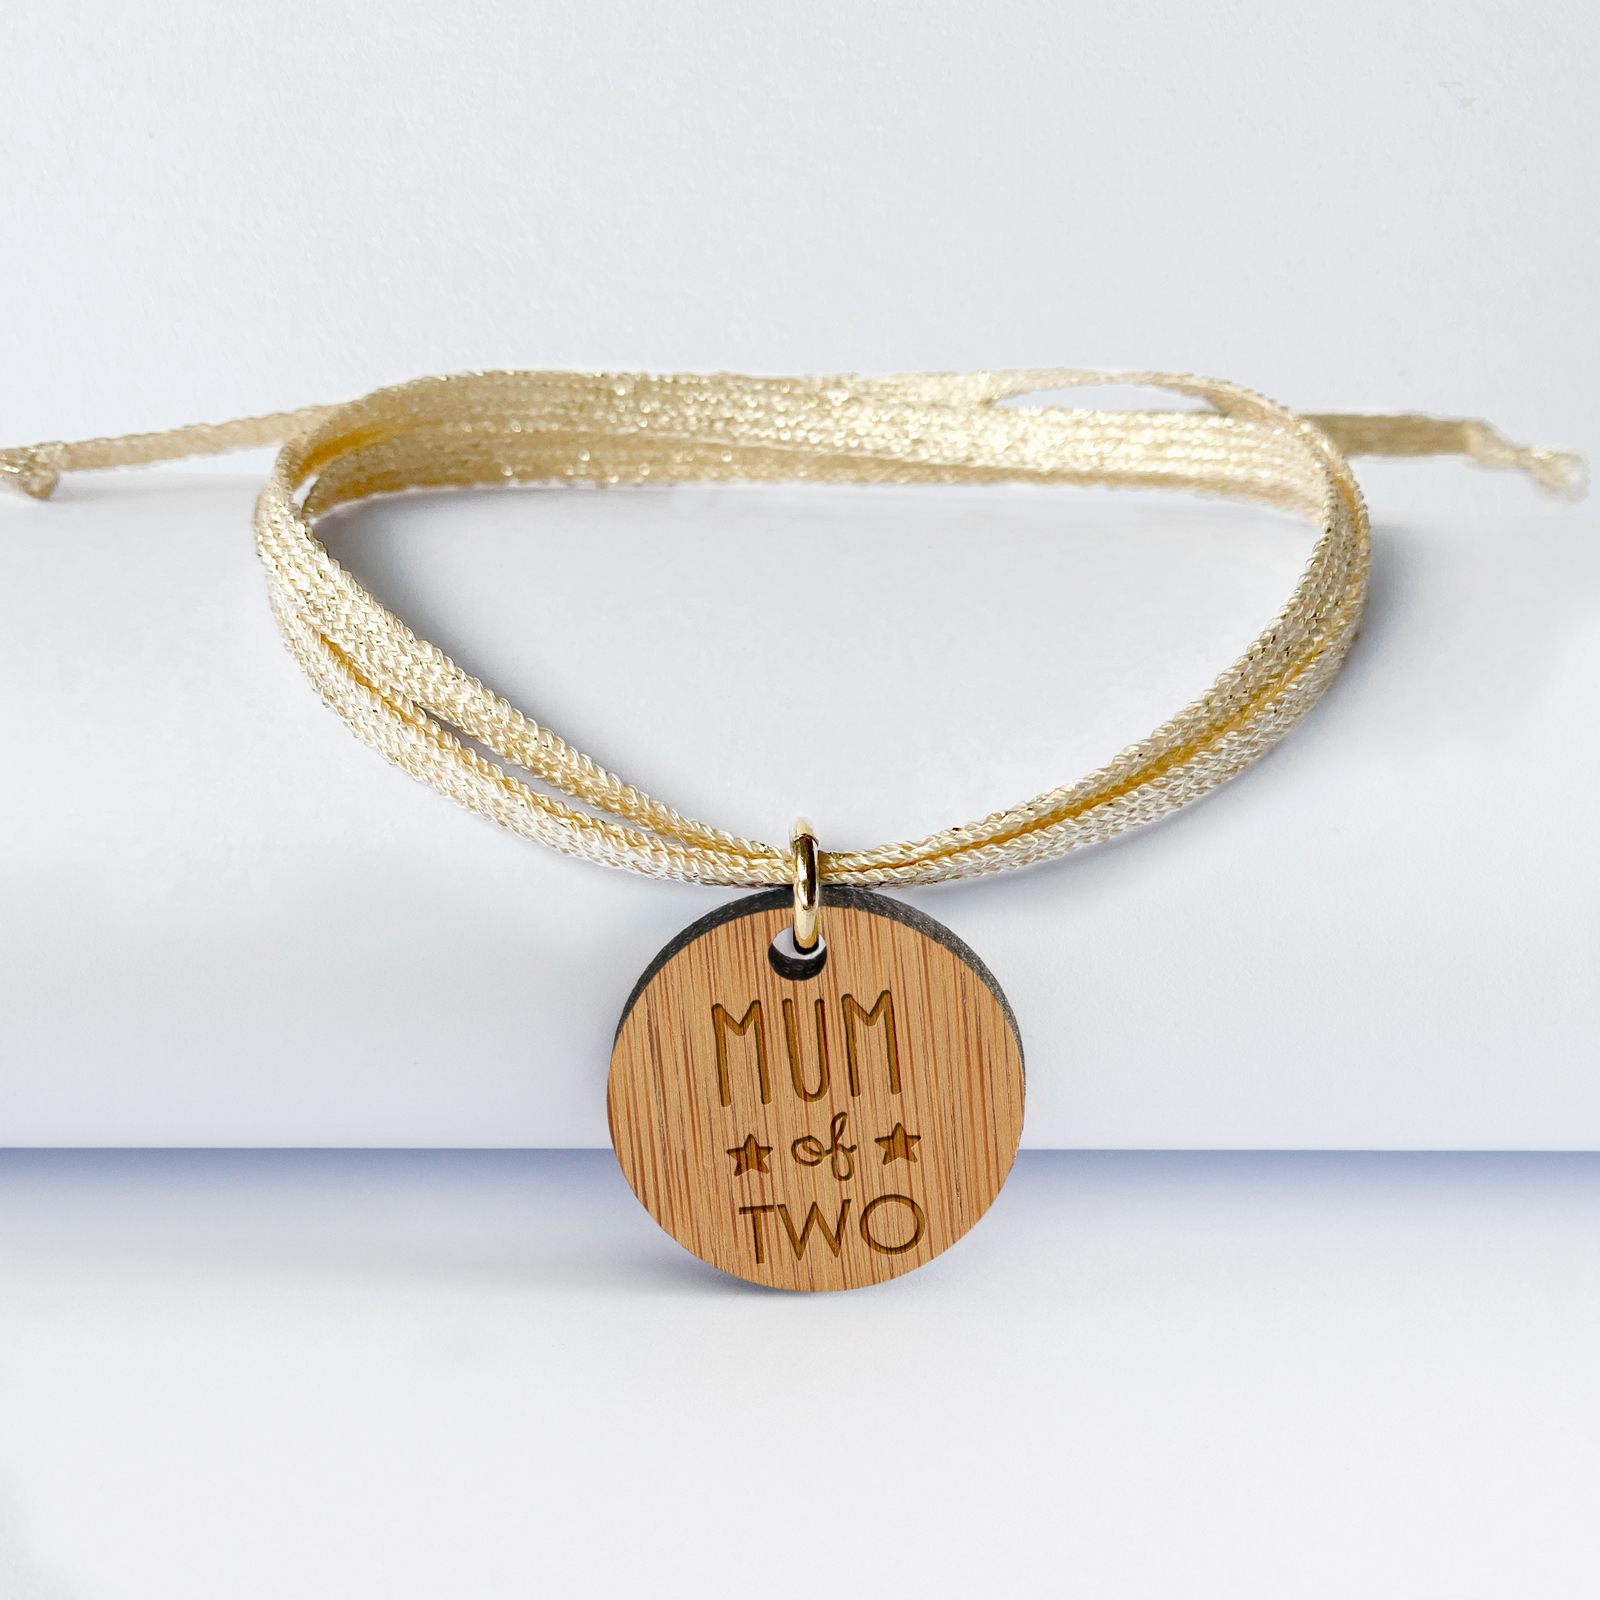 Bracelet 3 tours personnalisé médaille gravée bois dormeuse ronde 20 mm - édition spéciale "Mum of two" 1